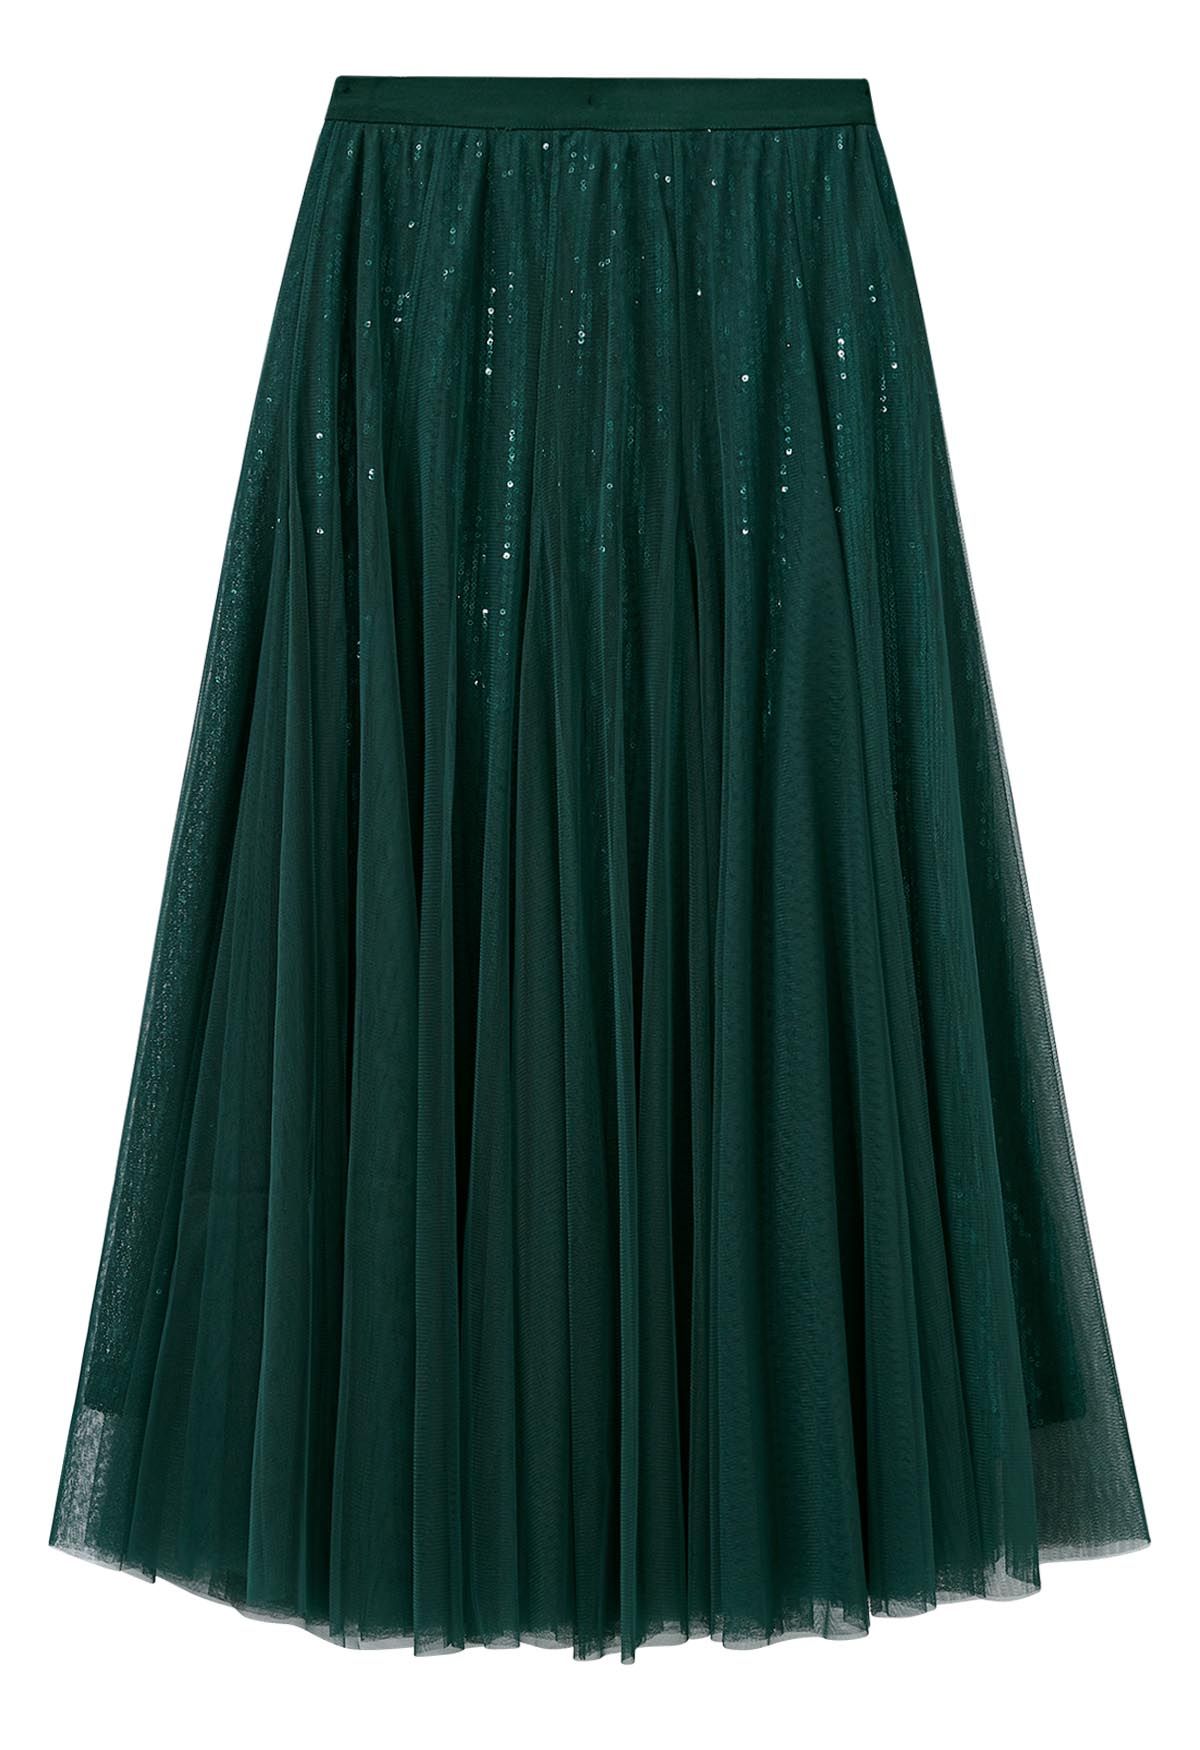 Ravishing Sequins Mesh Tulle Midi Skirt in Dark Green